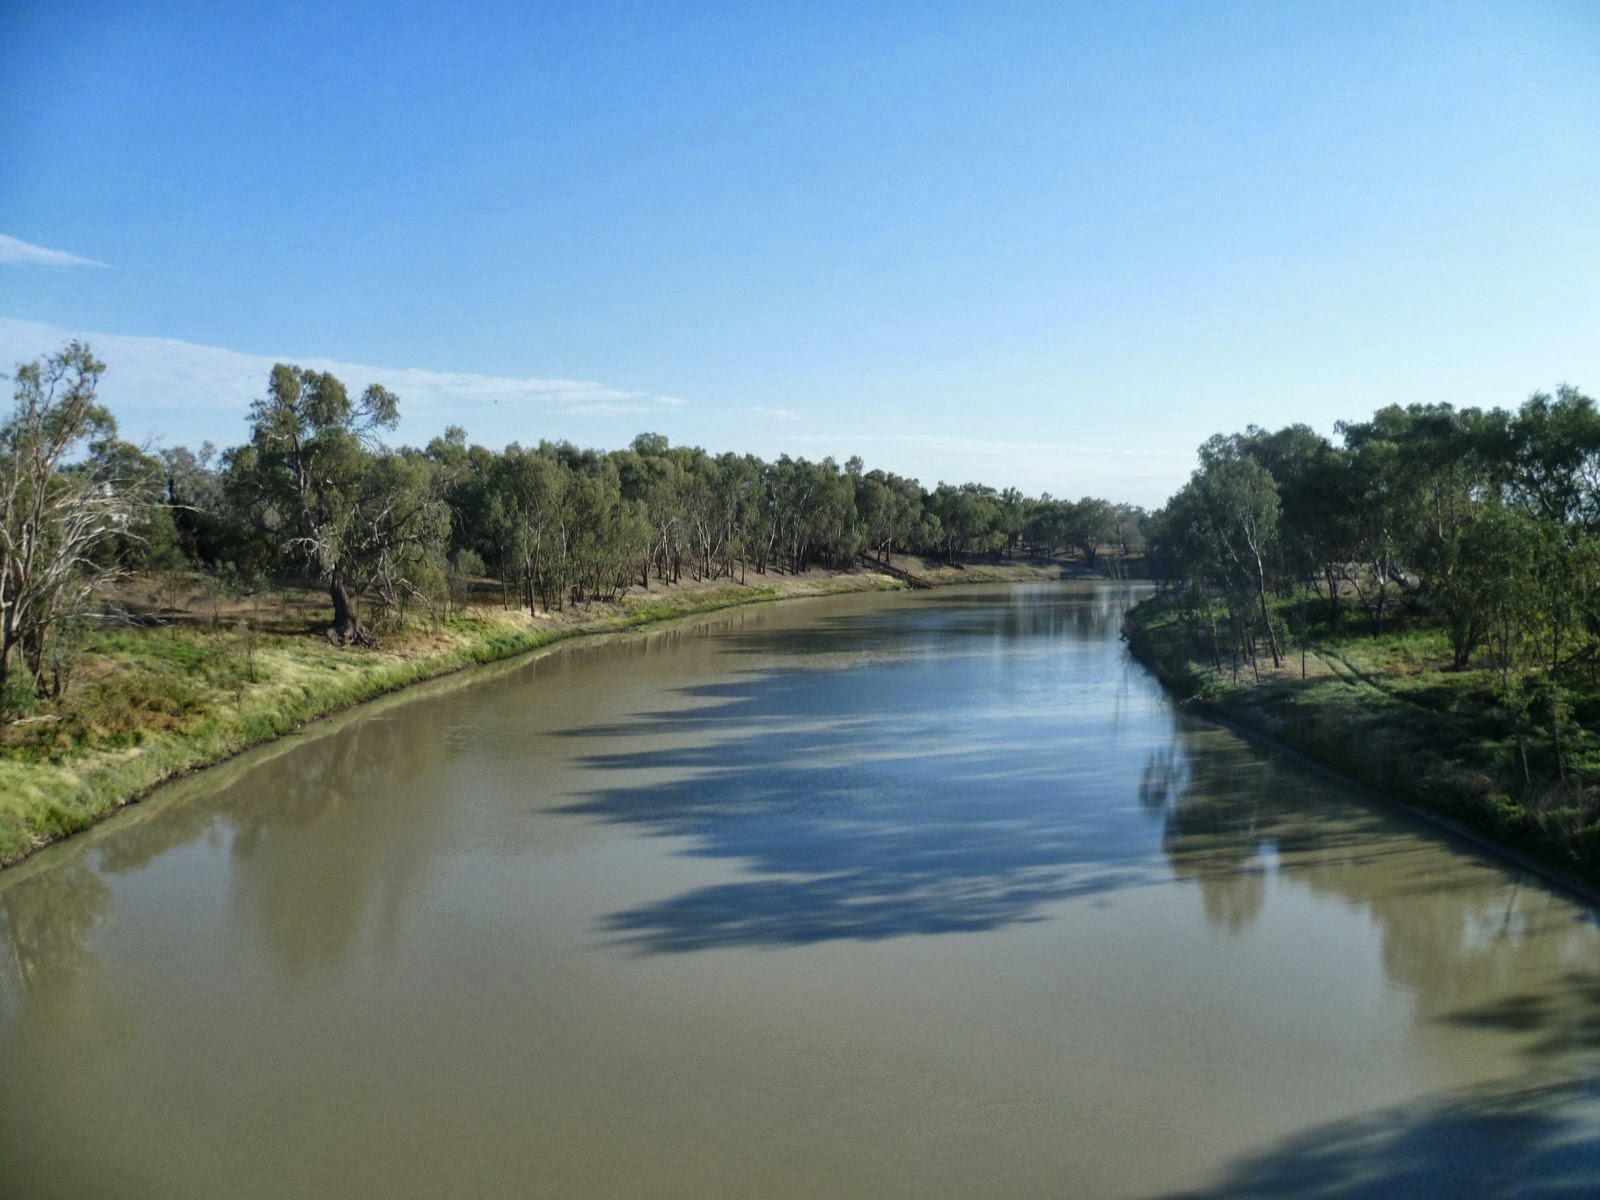 Река дарлинг полноводна. Река Дарлинг. Муррей в Австралии. Река Муррей. Река Дарлинг в Австралии.